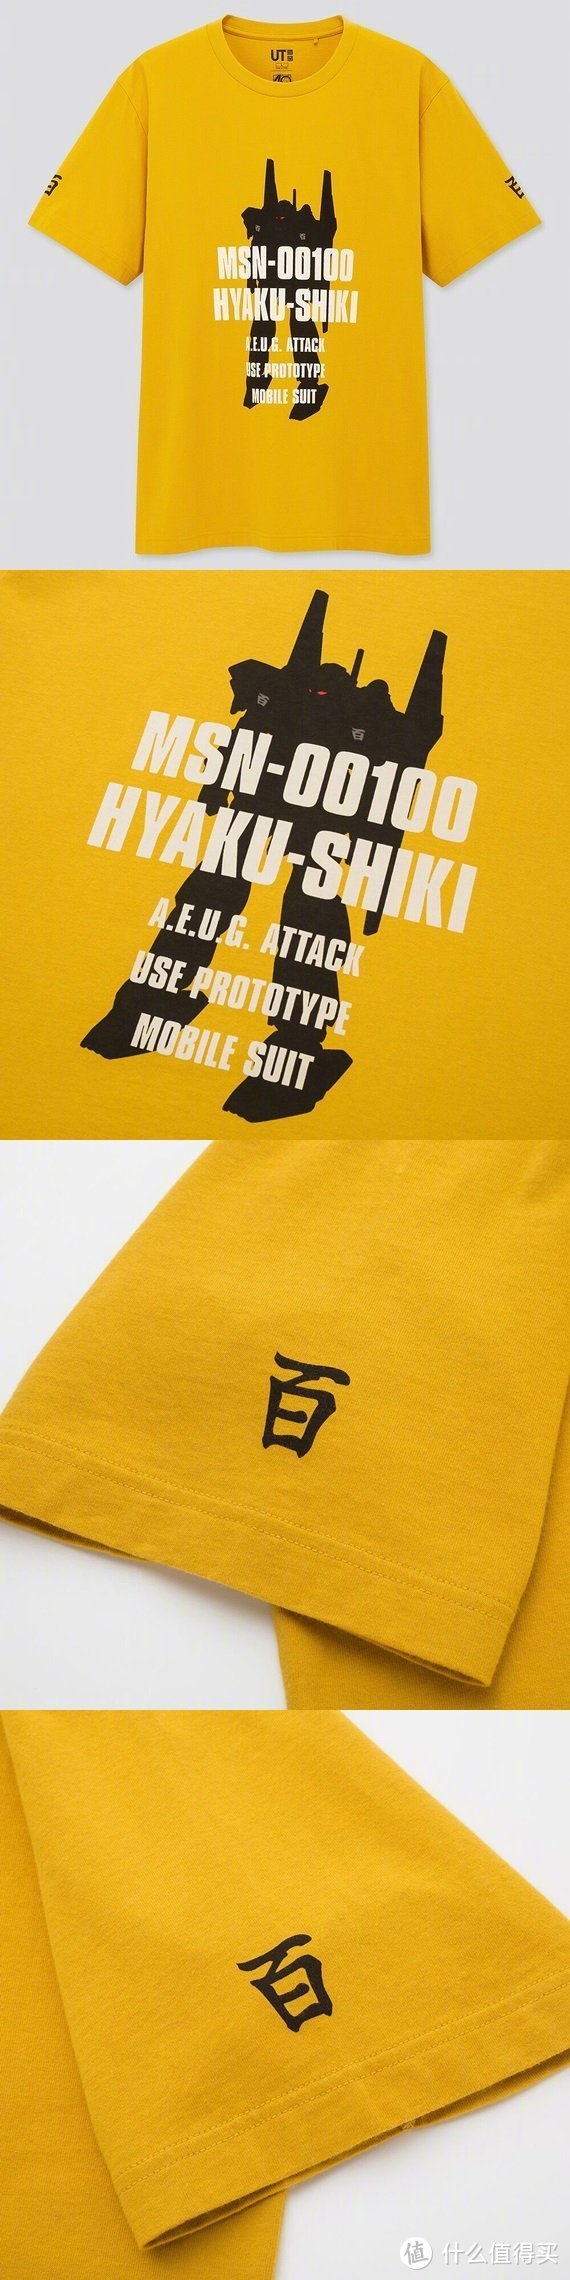 我是刚大木：优衣库UT&高达模型联名T恤3月下旬发售！